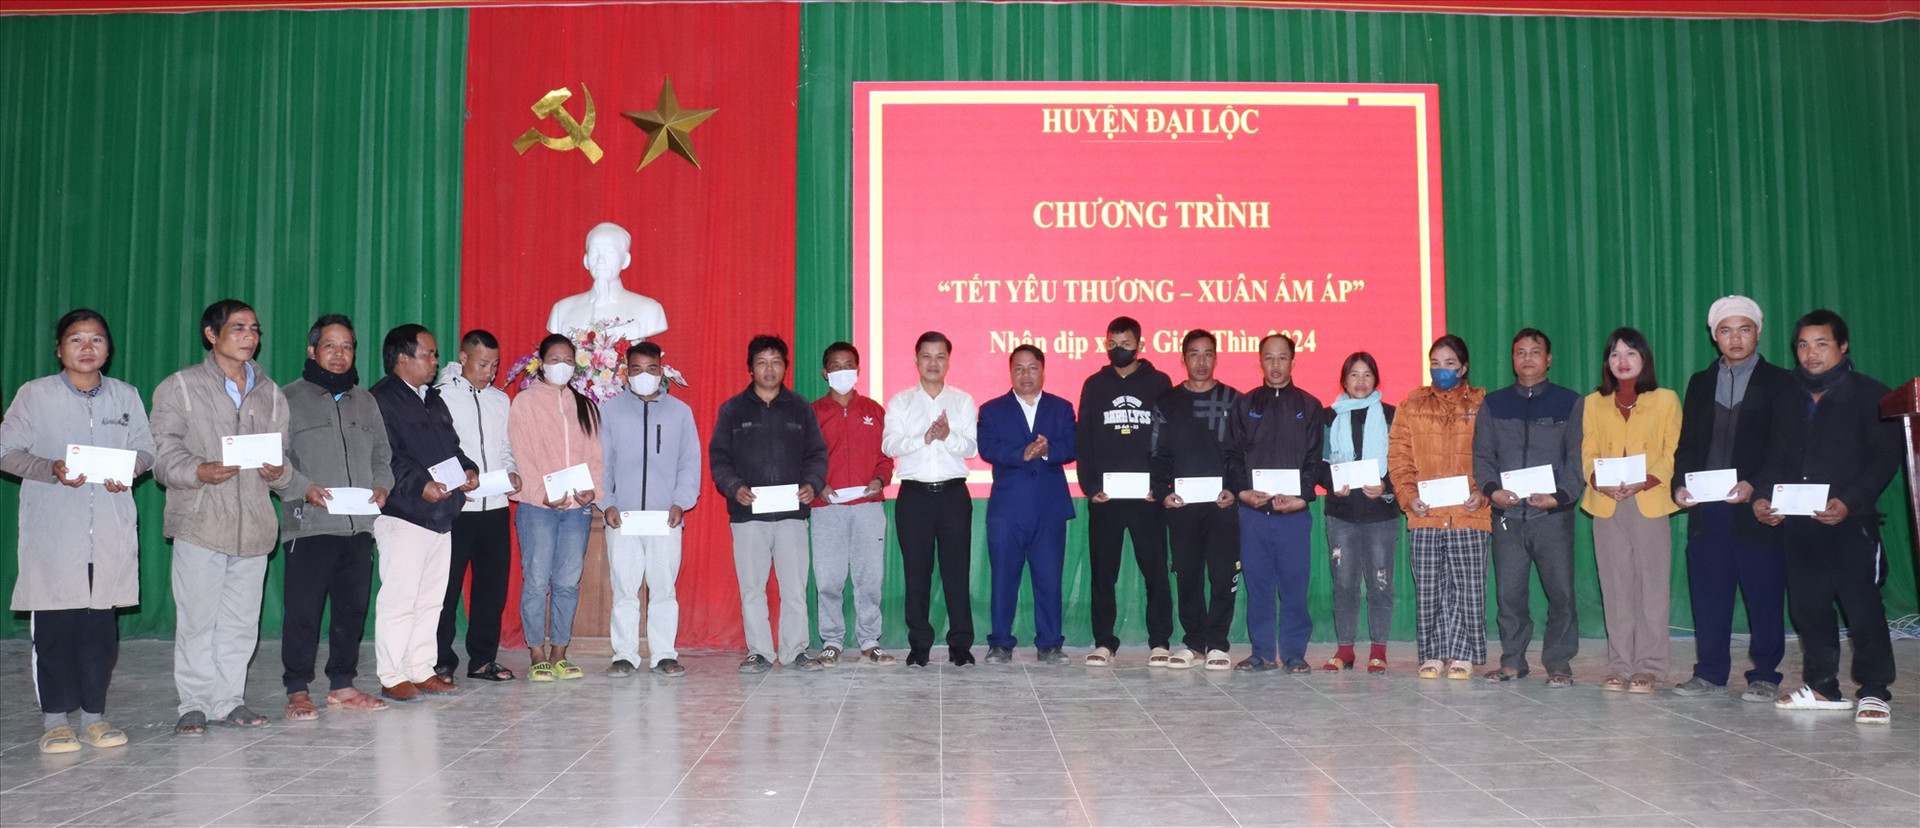 Lãnh đạo huyện Đại Lộc tặng quà Tết cho bà con xã A Xan, huyện Tây Giang. Ảnh H.Thúy